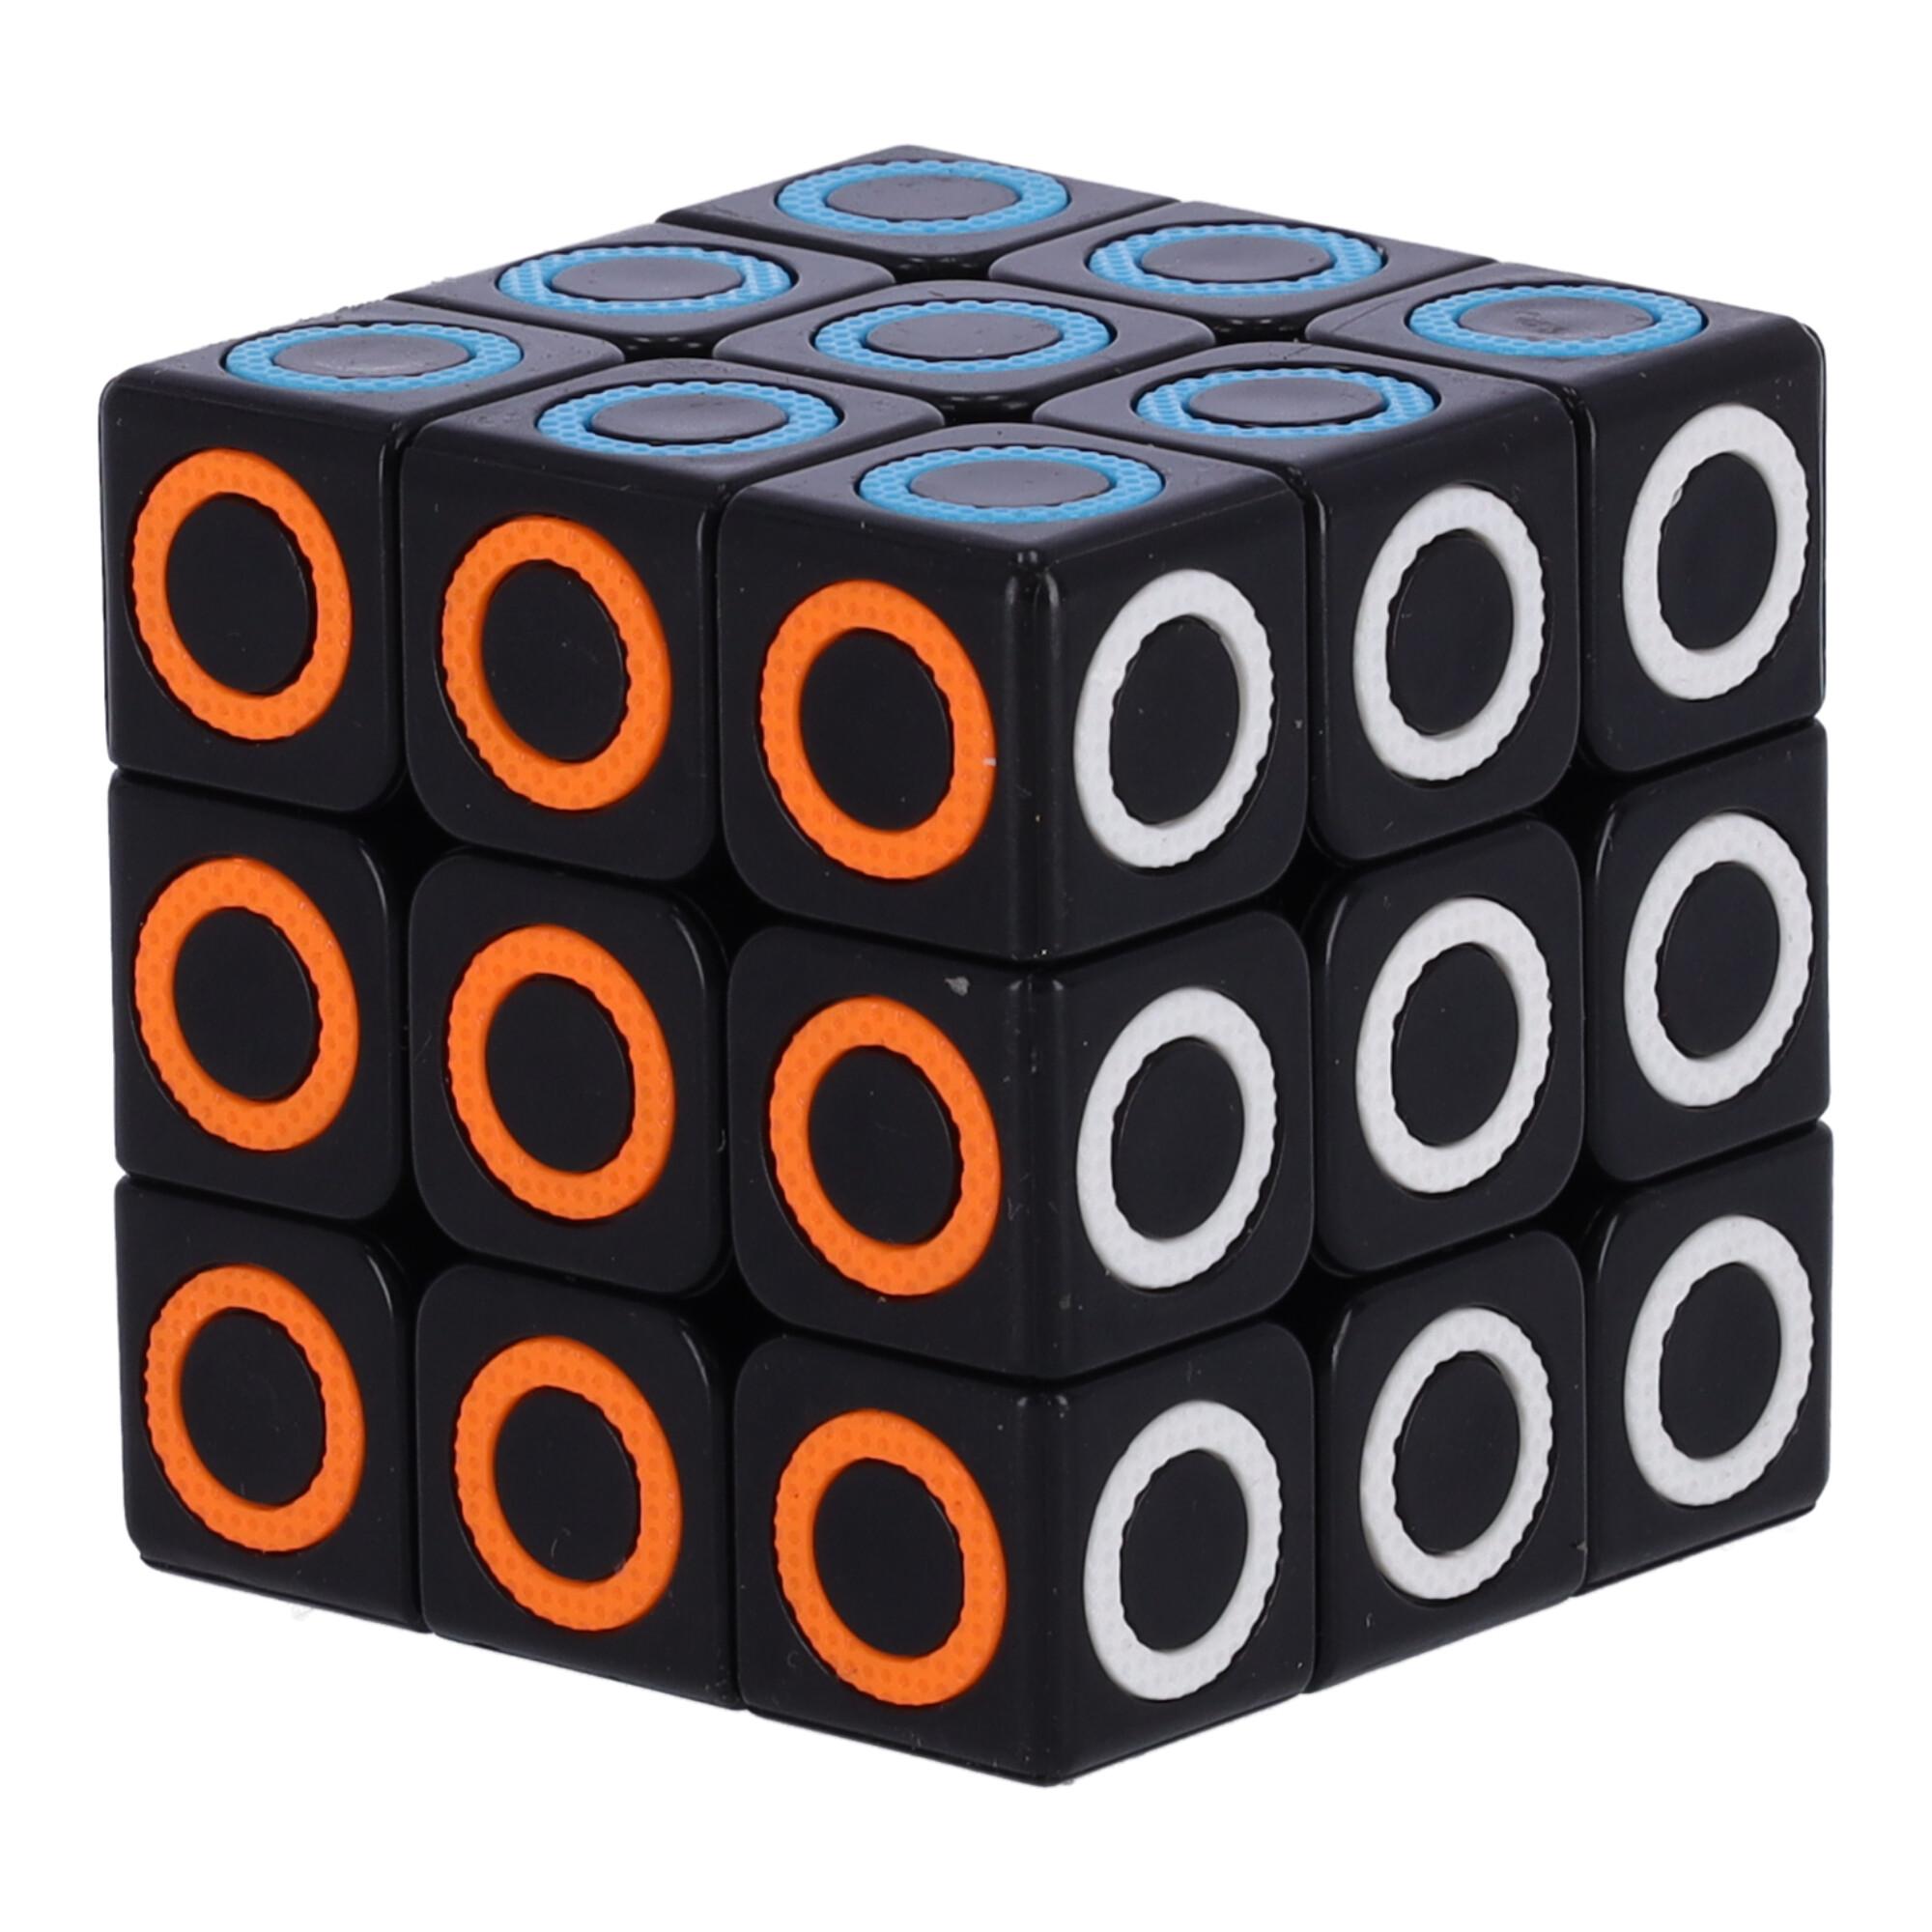 Nowoczesna układanka, kostka logiczna, Kostka Rubika - typ I